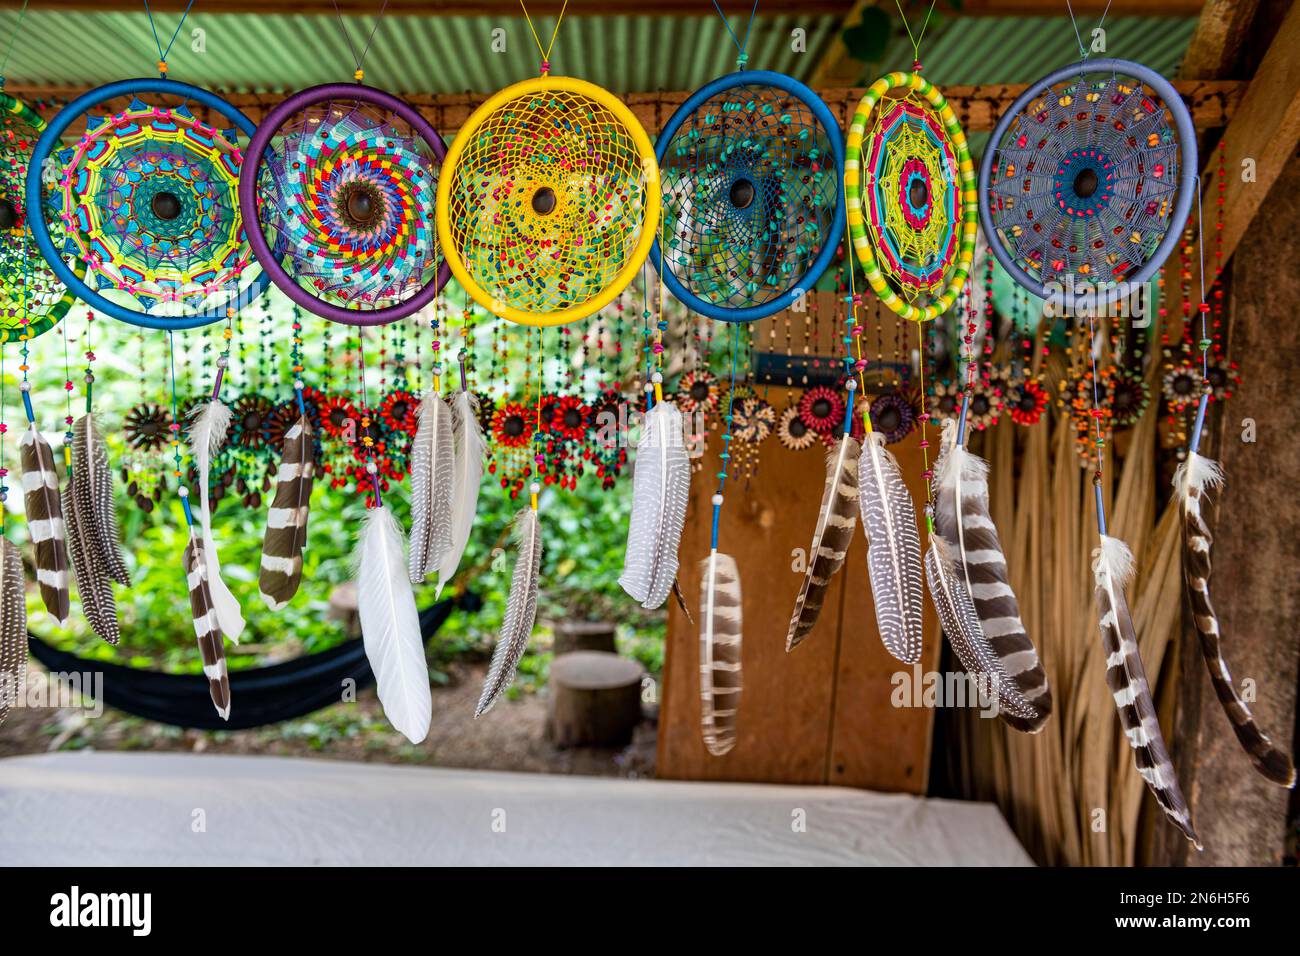 Farbenfrohe Federn oder Verkauf an der antiken archäologischen Maya-Ausgrabungsstätte Bonampak, Chiapas, Mexiko Stockfoto